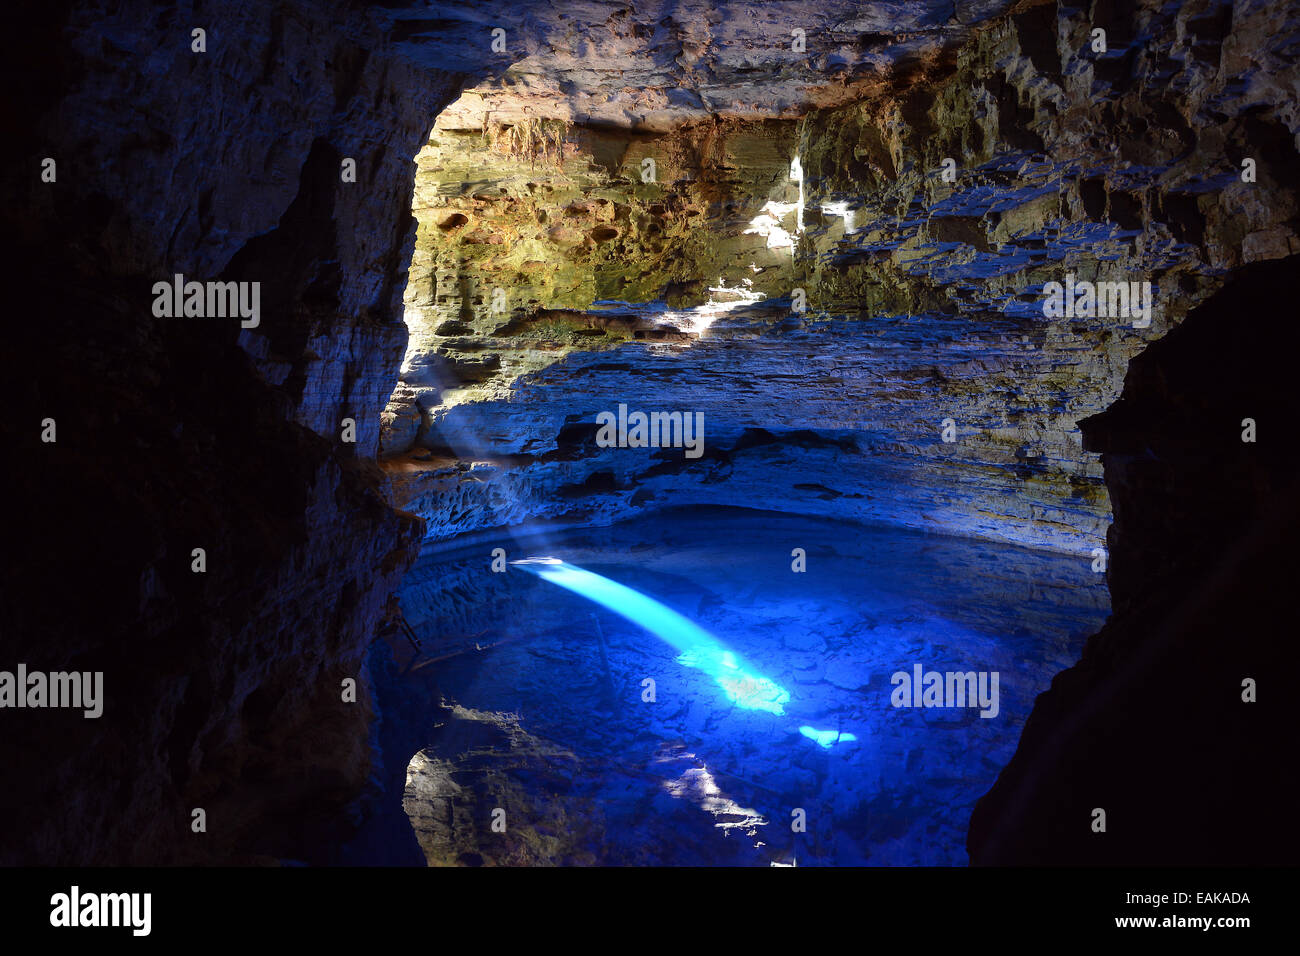 La grotte colorée Poco Encantado avec rayons de lumière, les montagnes de Chapada Diamantina, Bahia, Brésil Banque D'Images